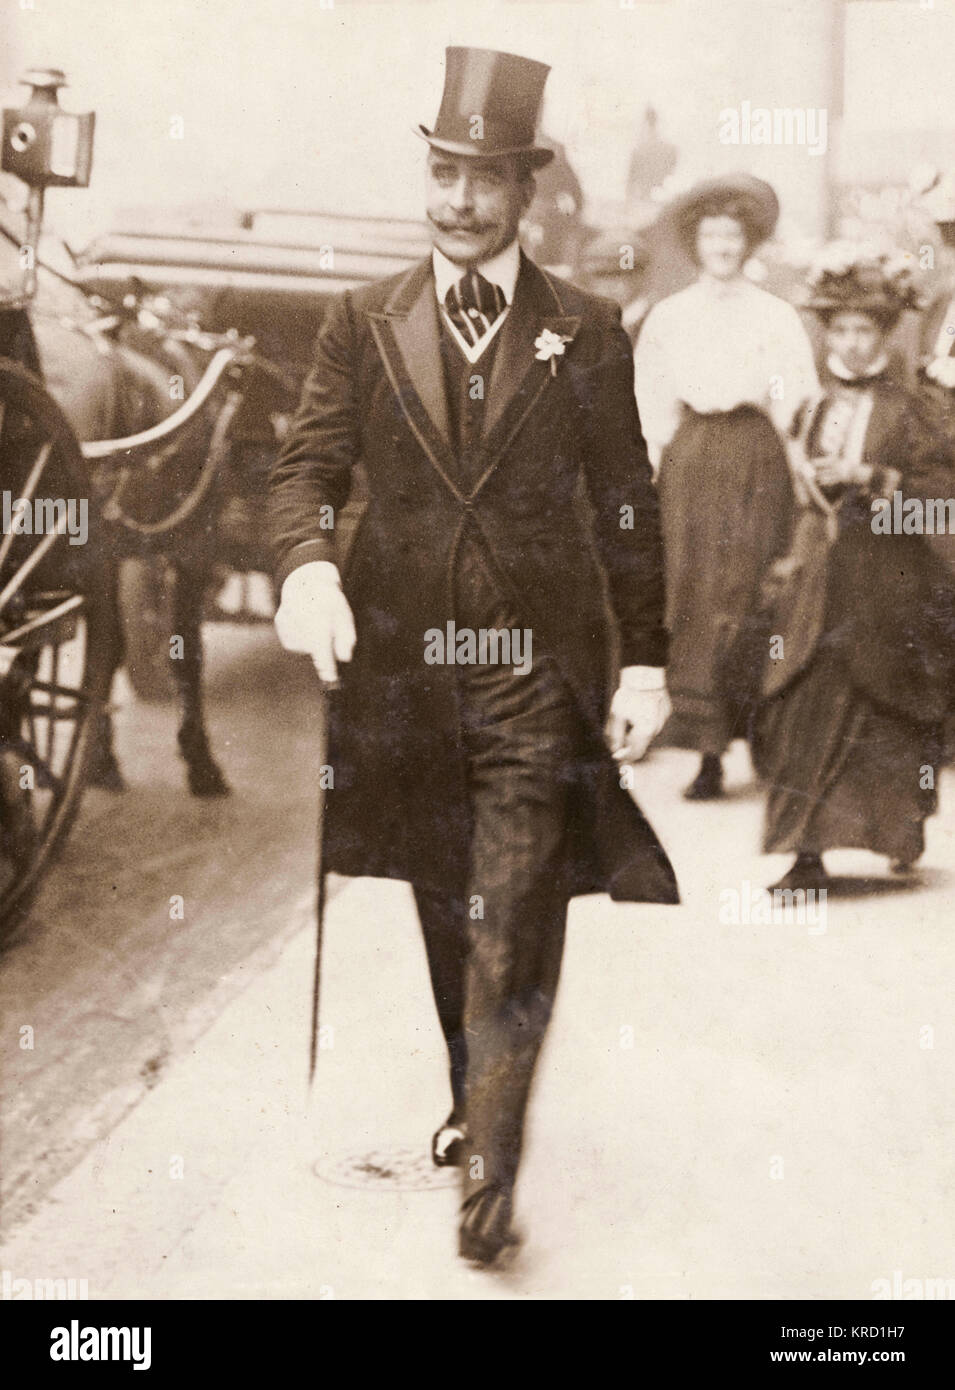 Il principe Francesco di Teck (1870-1910), fratello di Queen Mary, camminando lungo la strada in smart tight. Data: circa 1910 Foto Stock